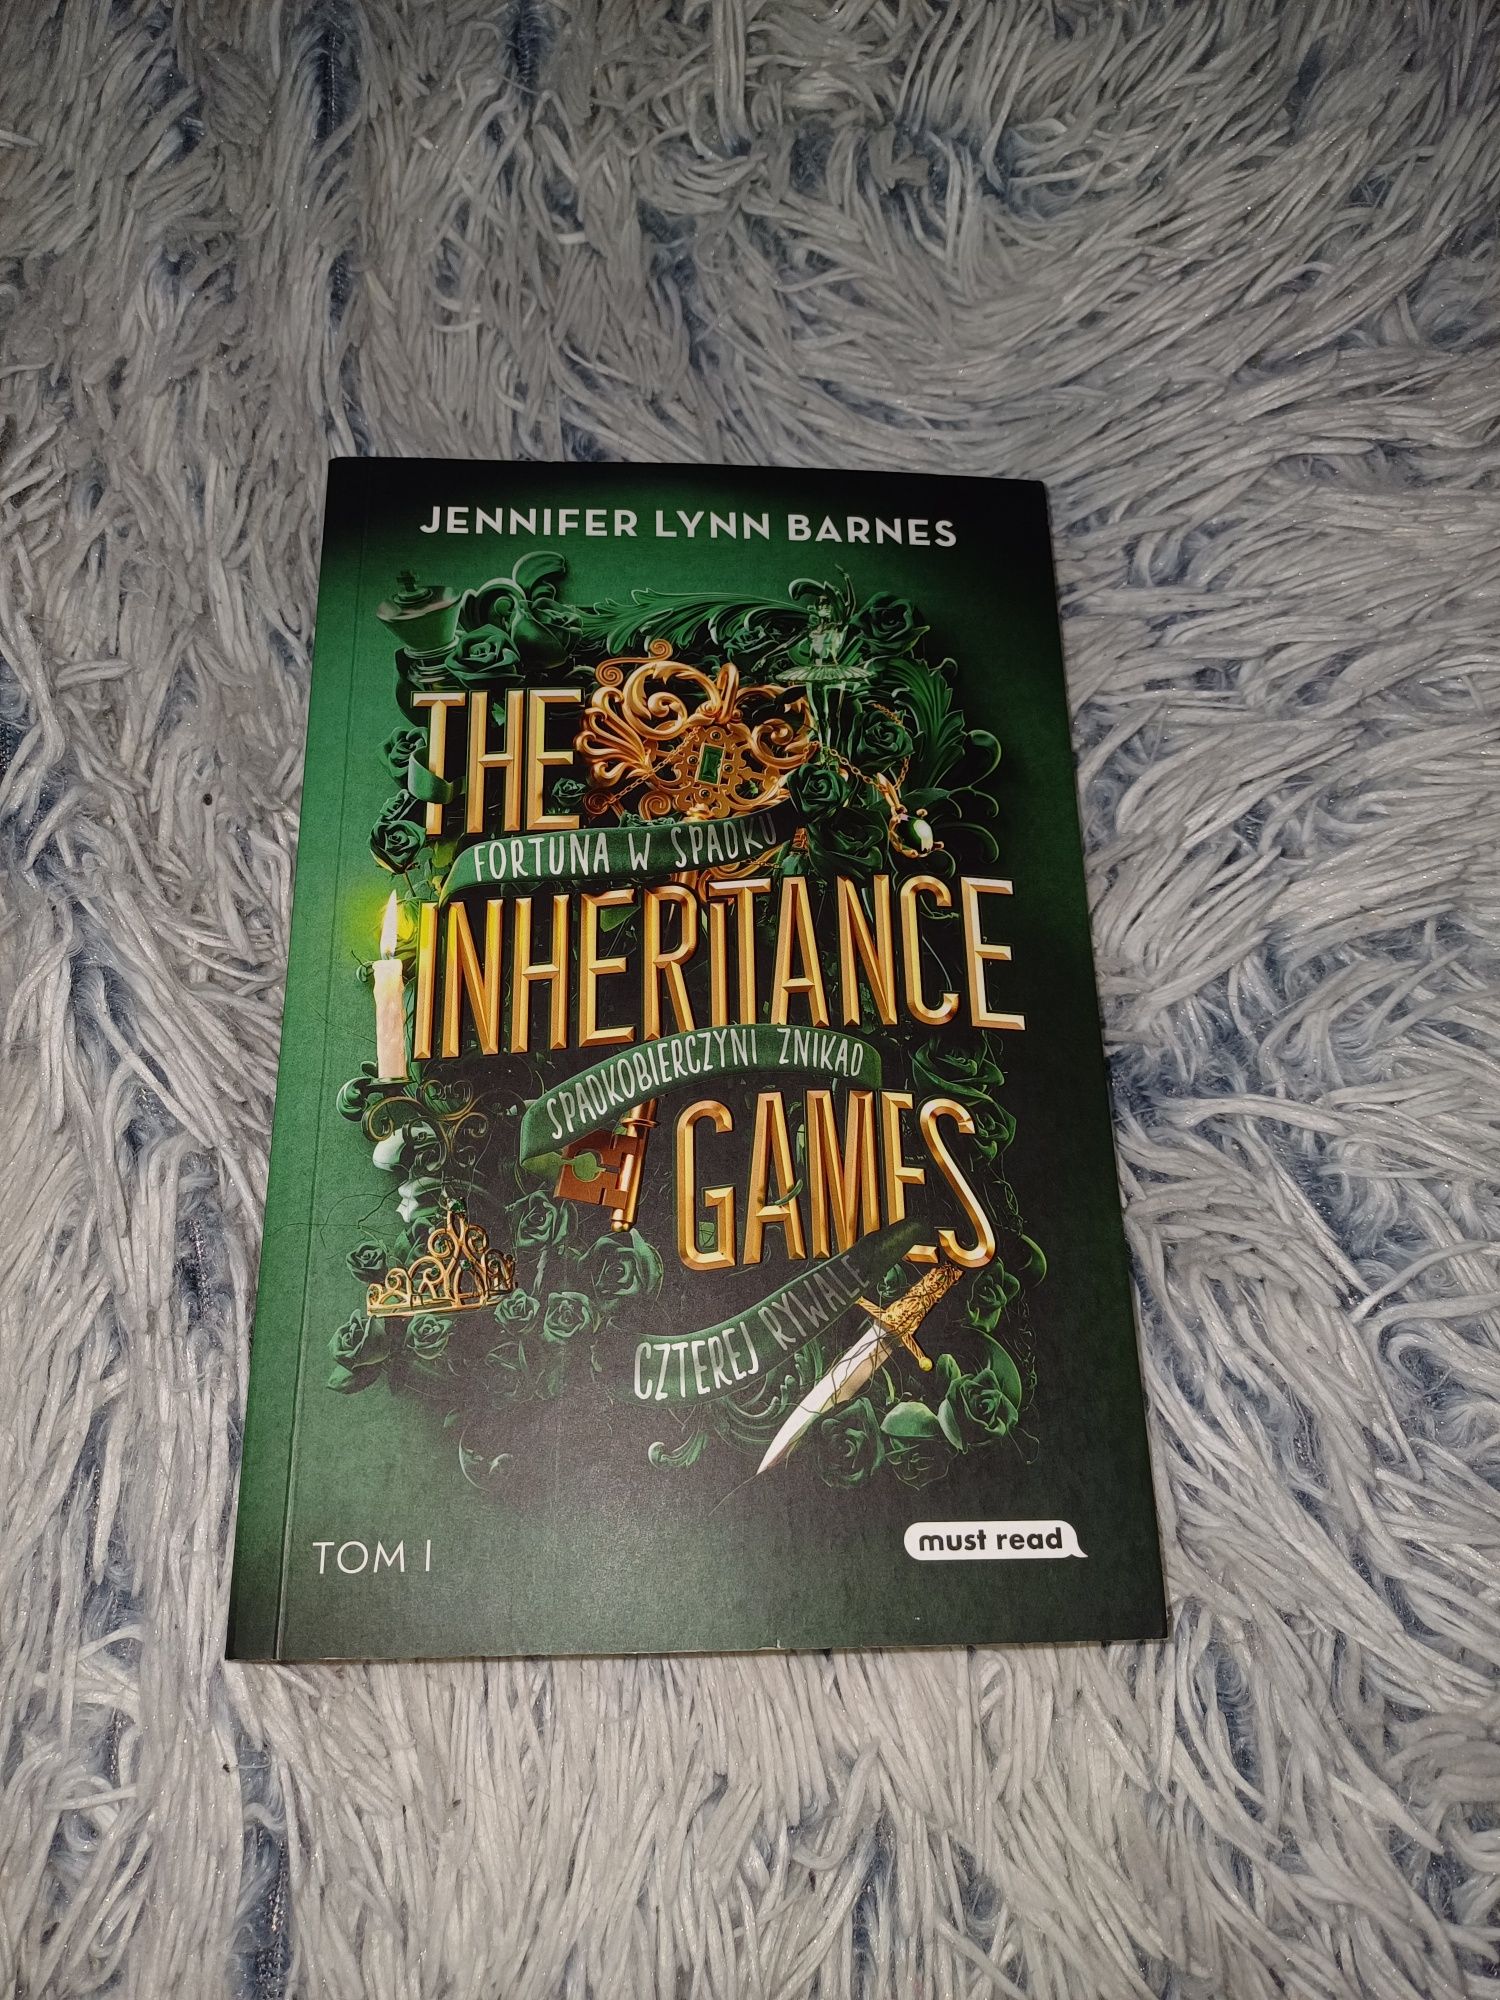 Książka "The Inheritance Games" tom1